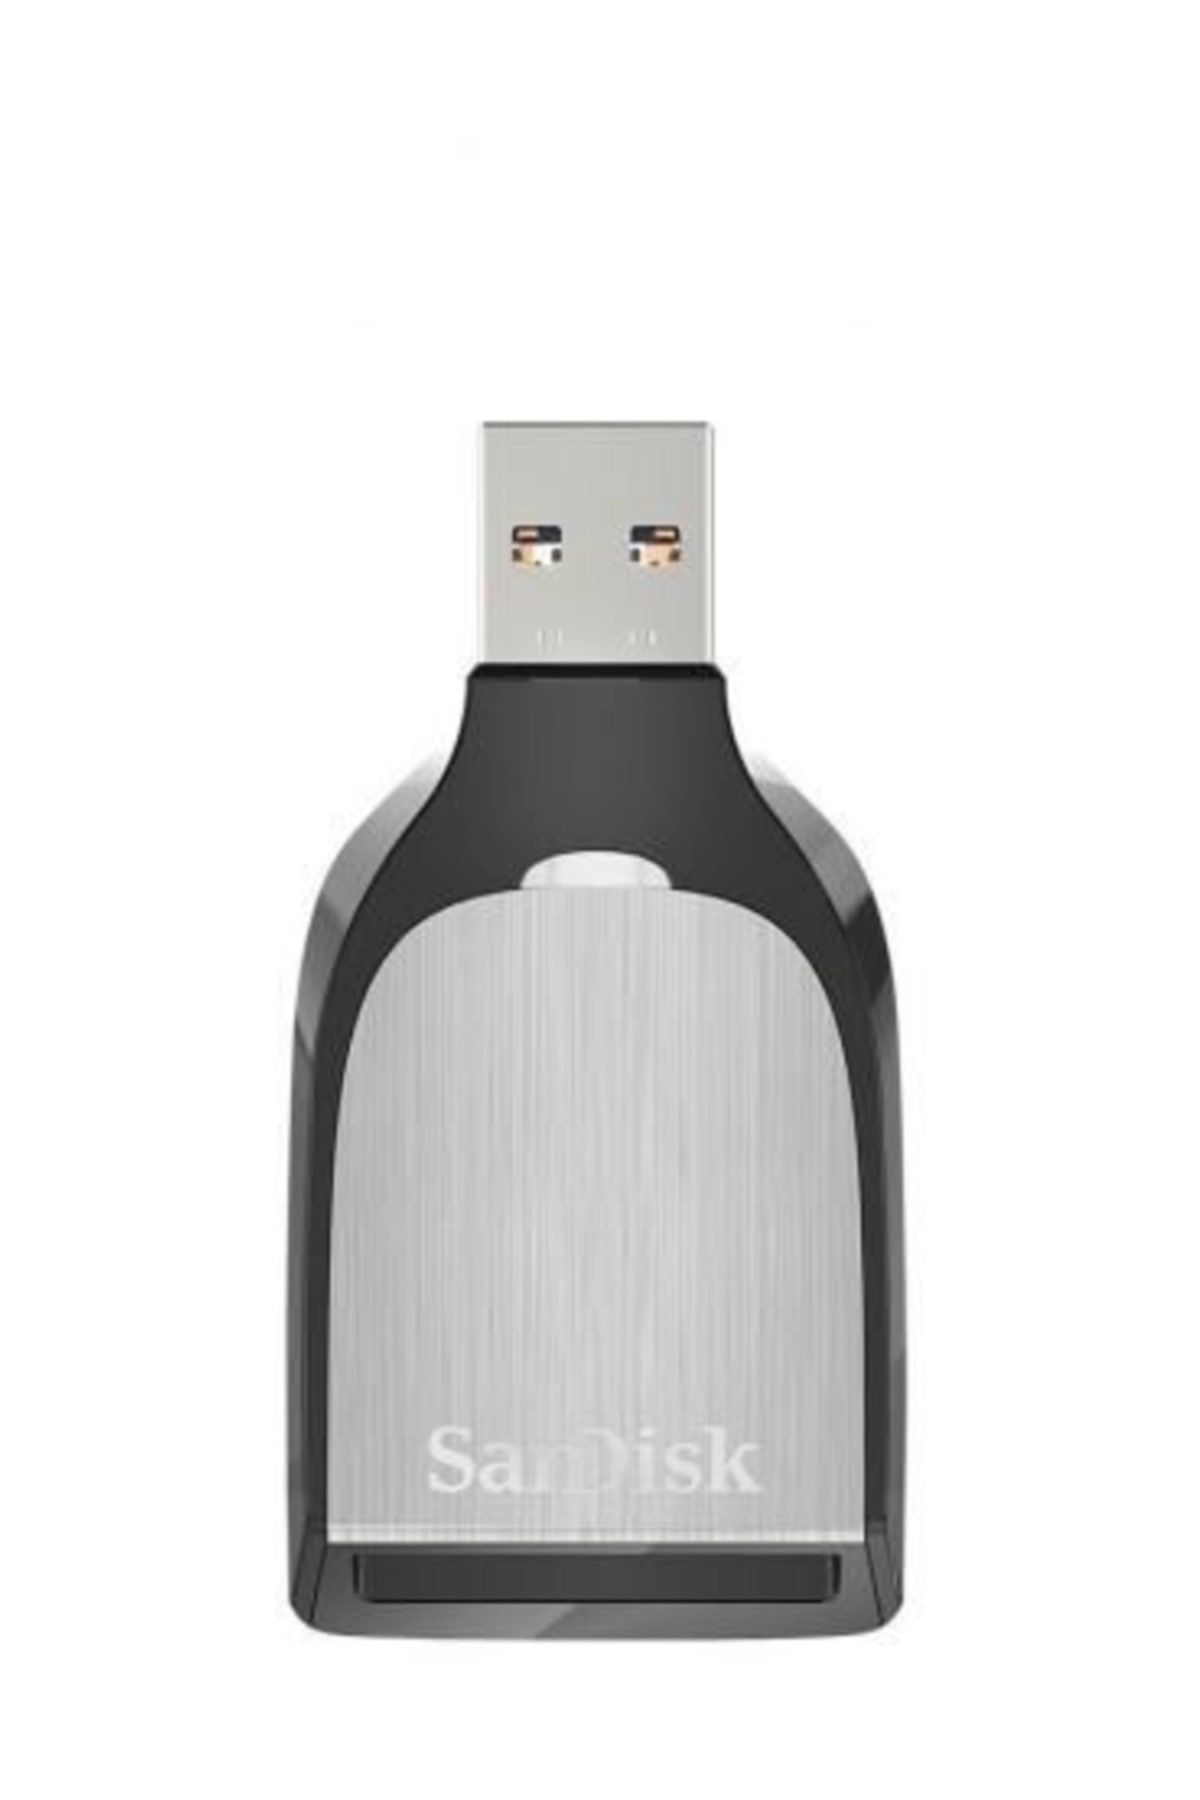 Sandisk Extreme Pro Sd Uhs-ıı Reader/sddr-399-g46